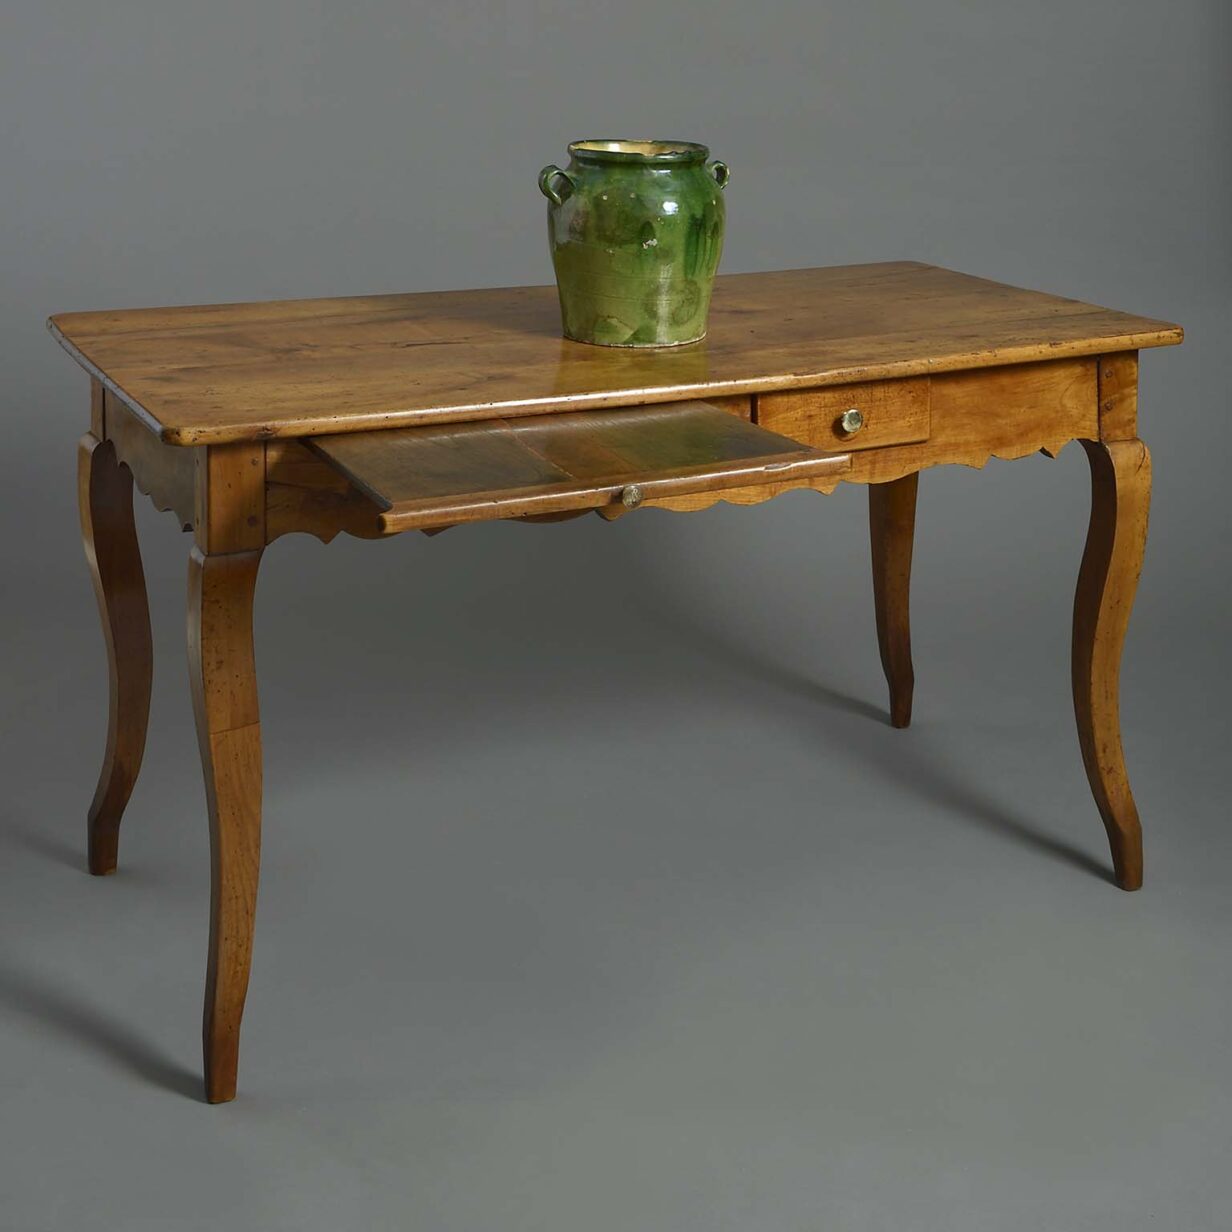 Mid-18th century louis xv period cherrywood farmhouse table